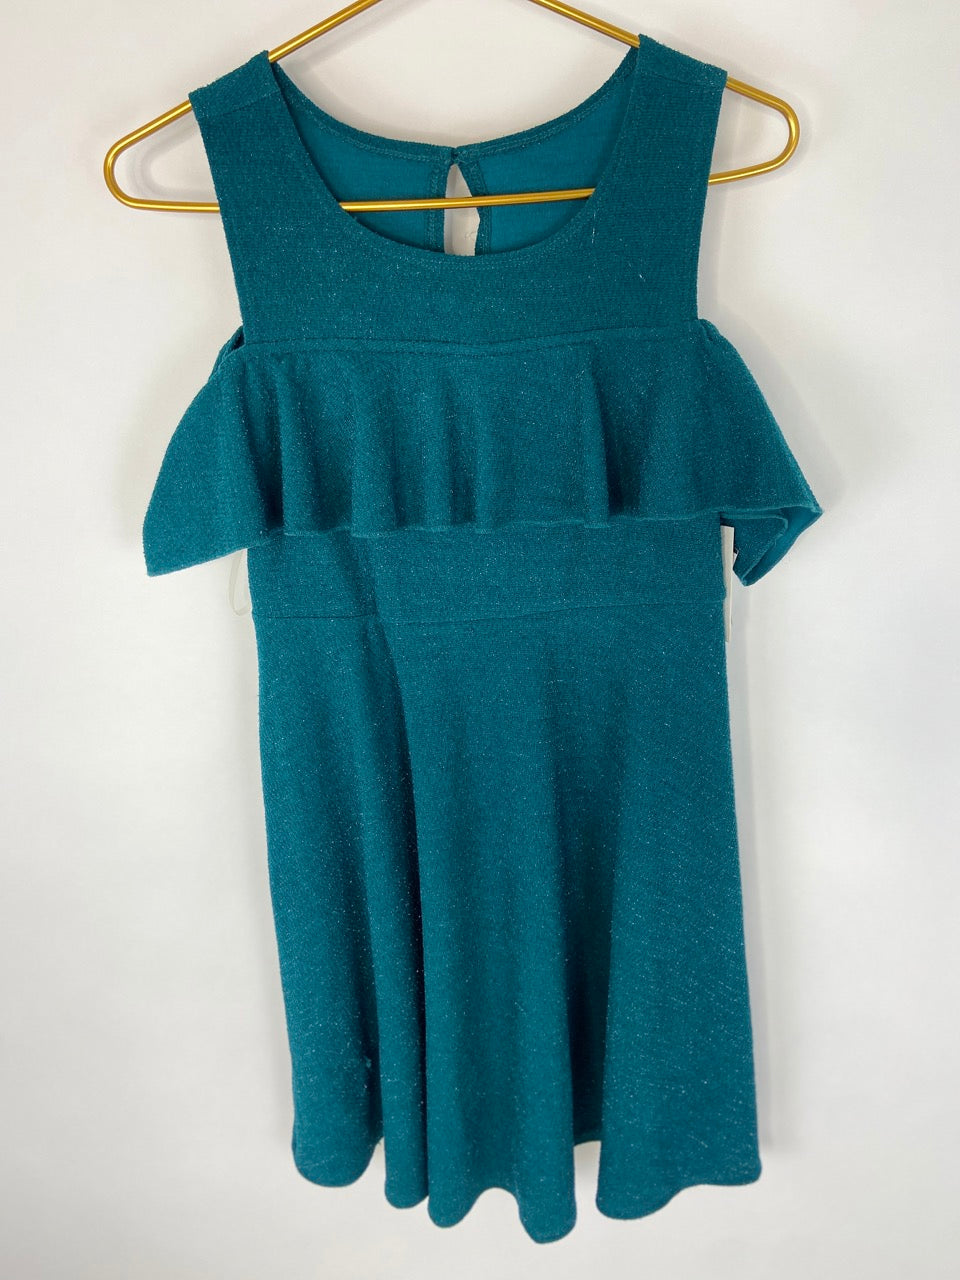 NWT Emerald Peek-a-boo Shoulder Dress- Youth XL (16)